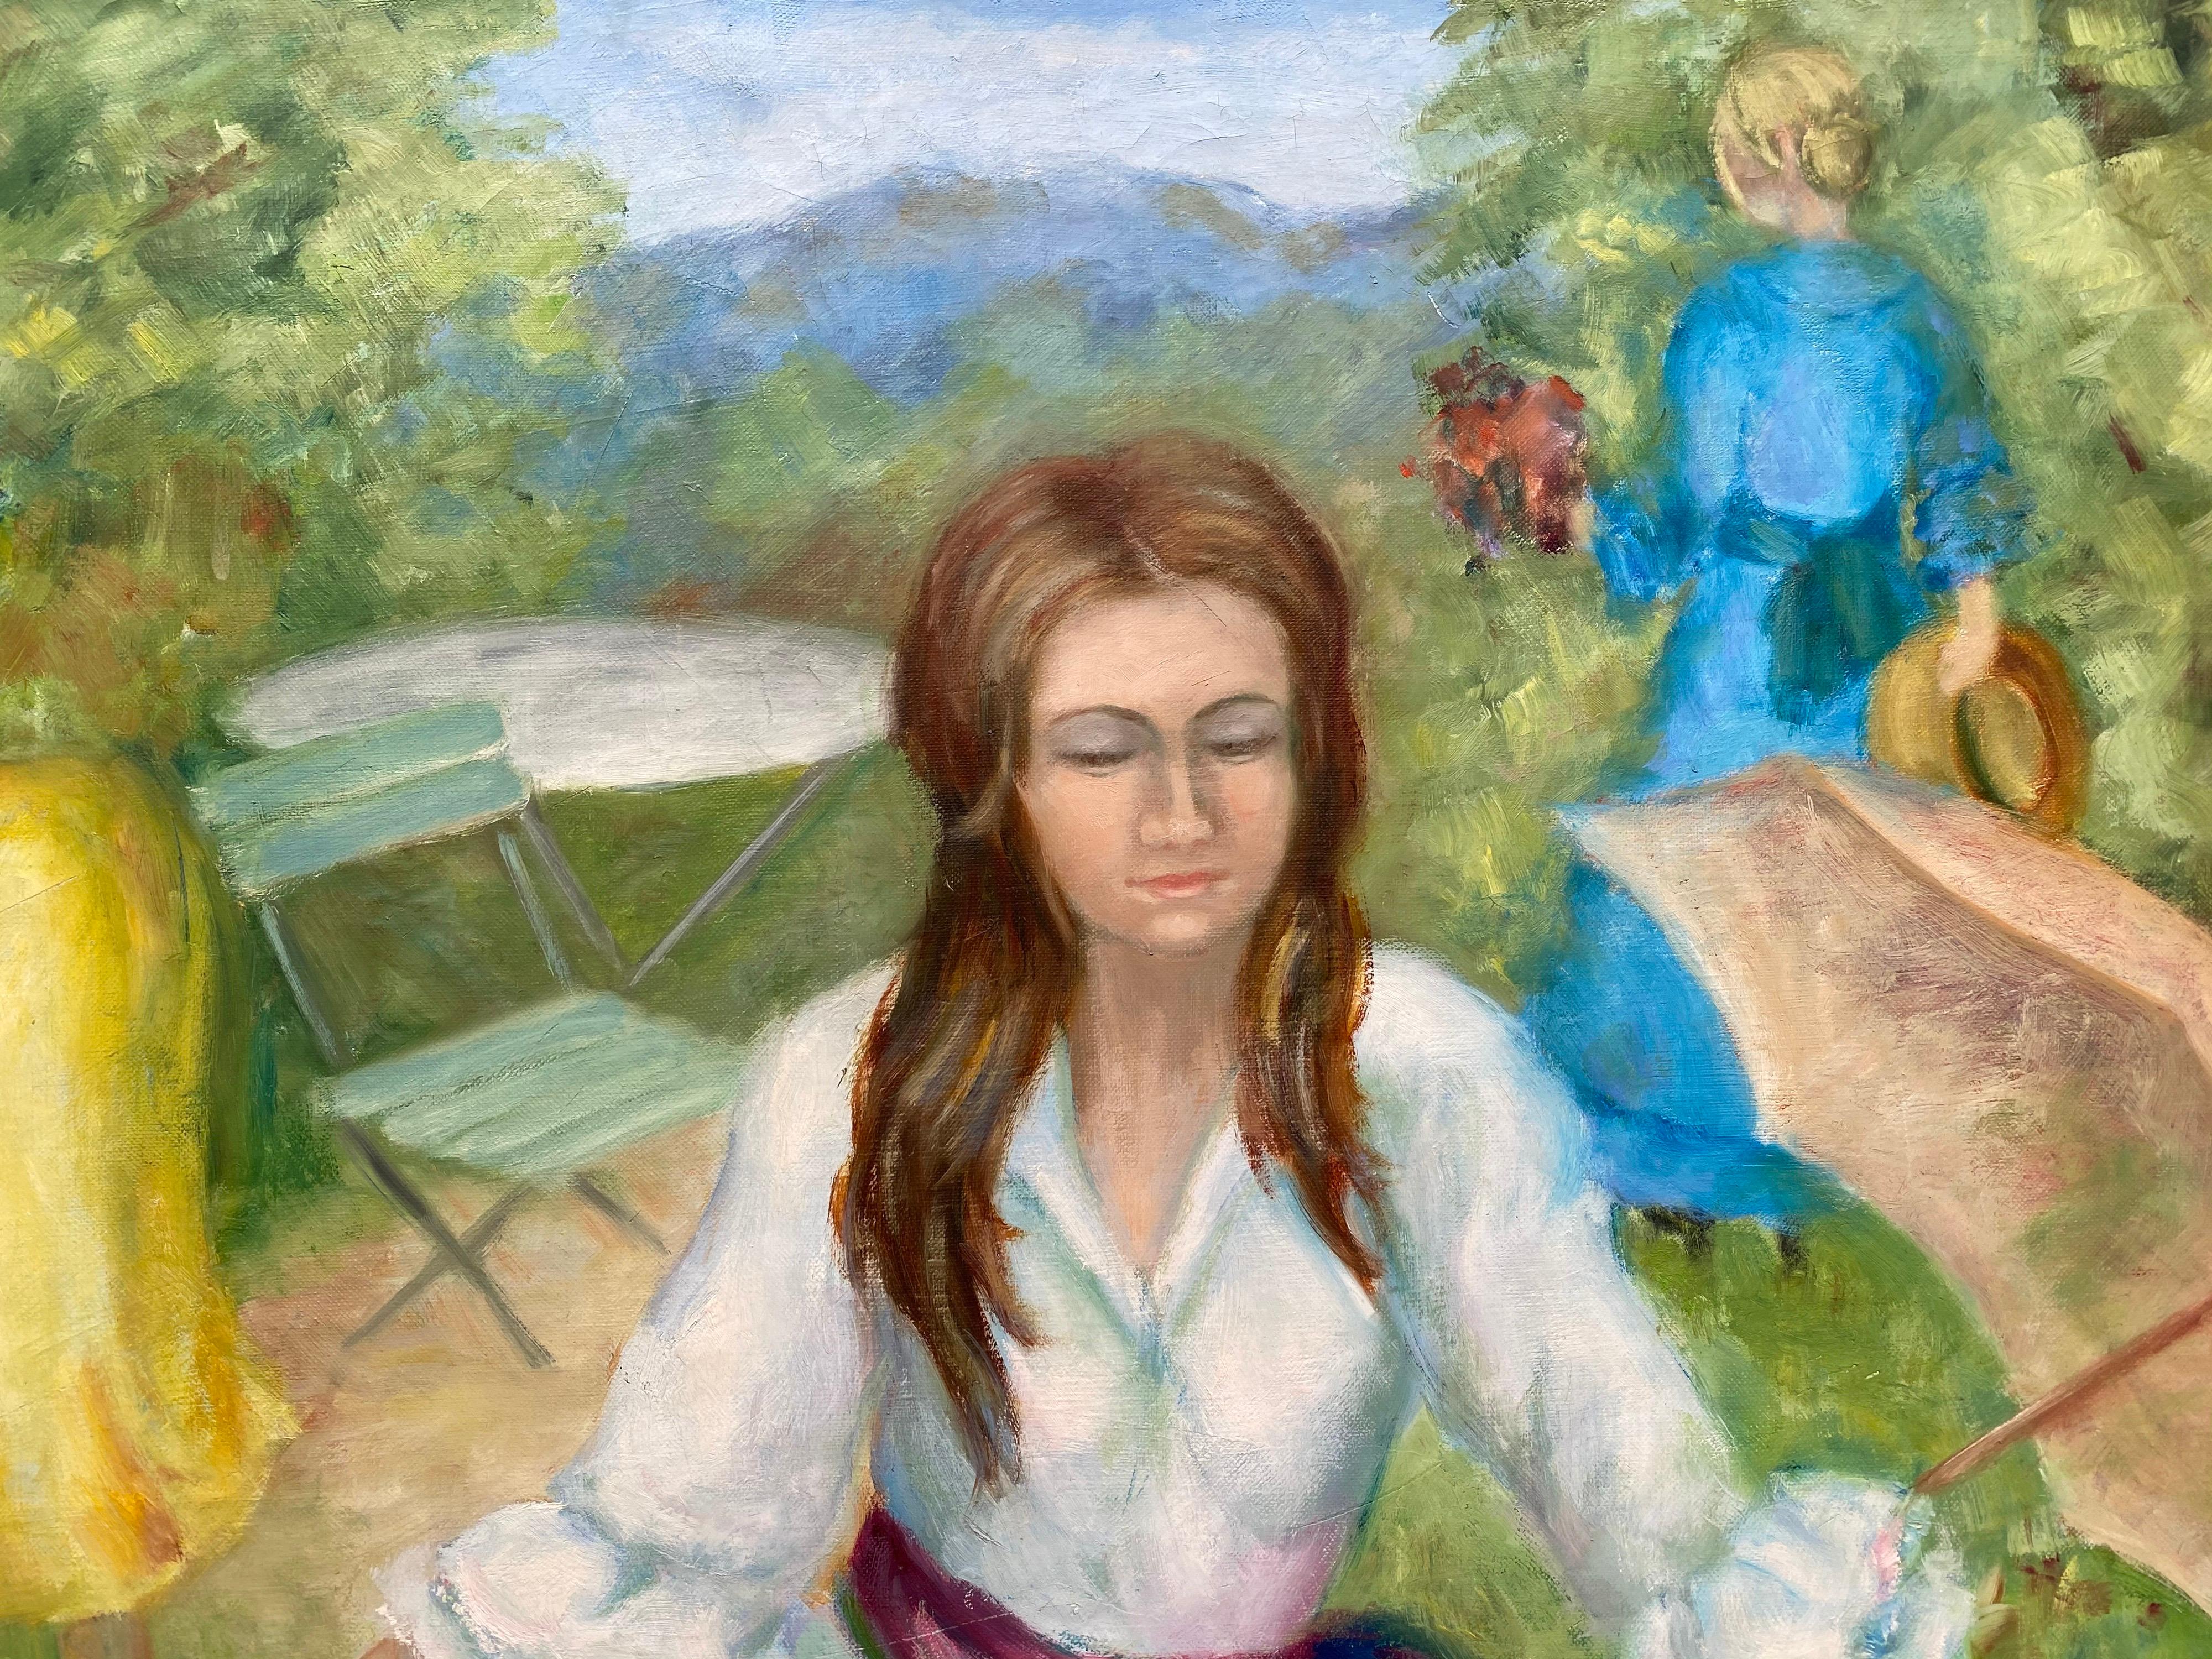 Grandes jeunes femmes impressionnistes françaises du 20ème siècle dans un parc de jardin coloré - Painting de Yvette Bossiere